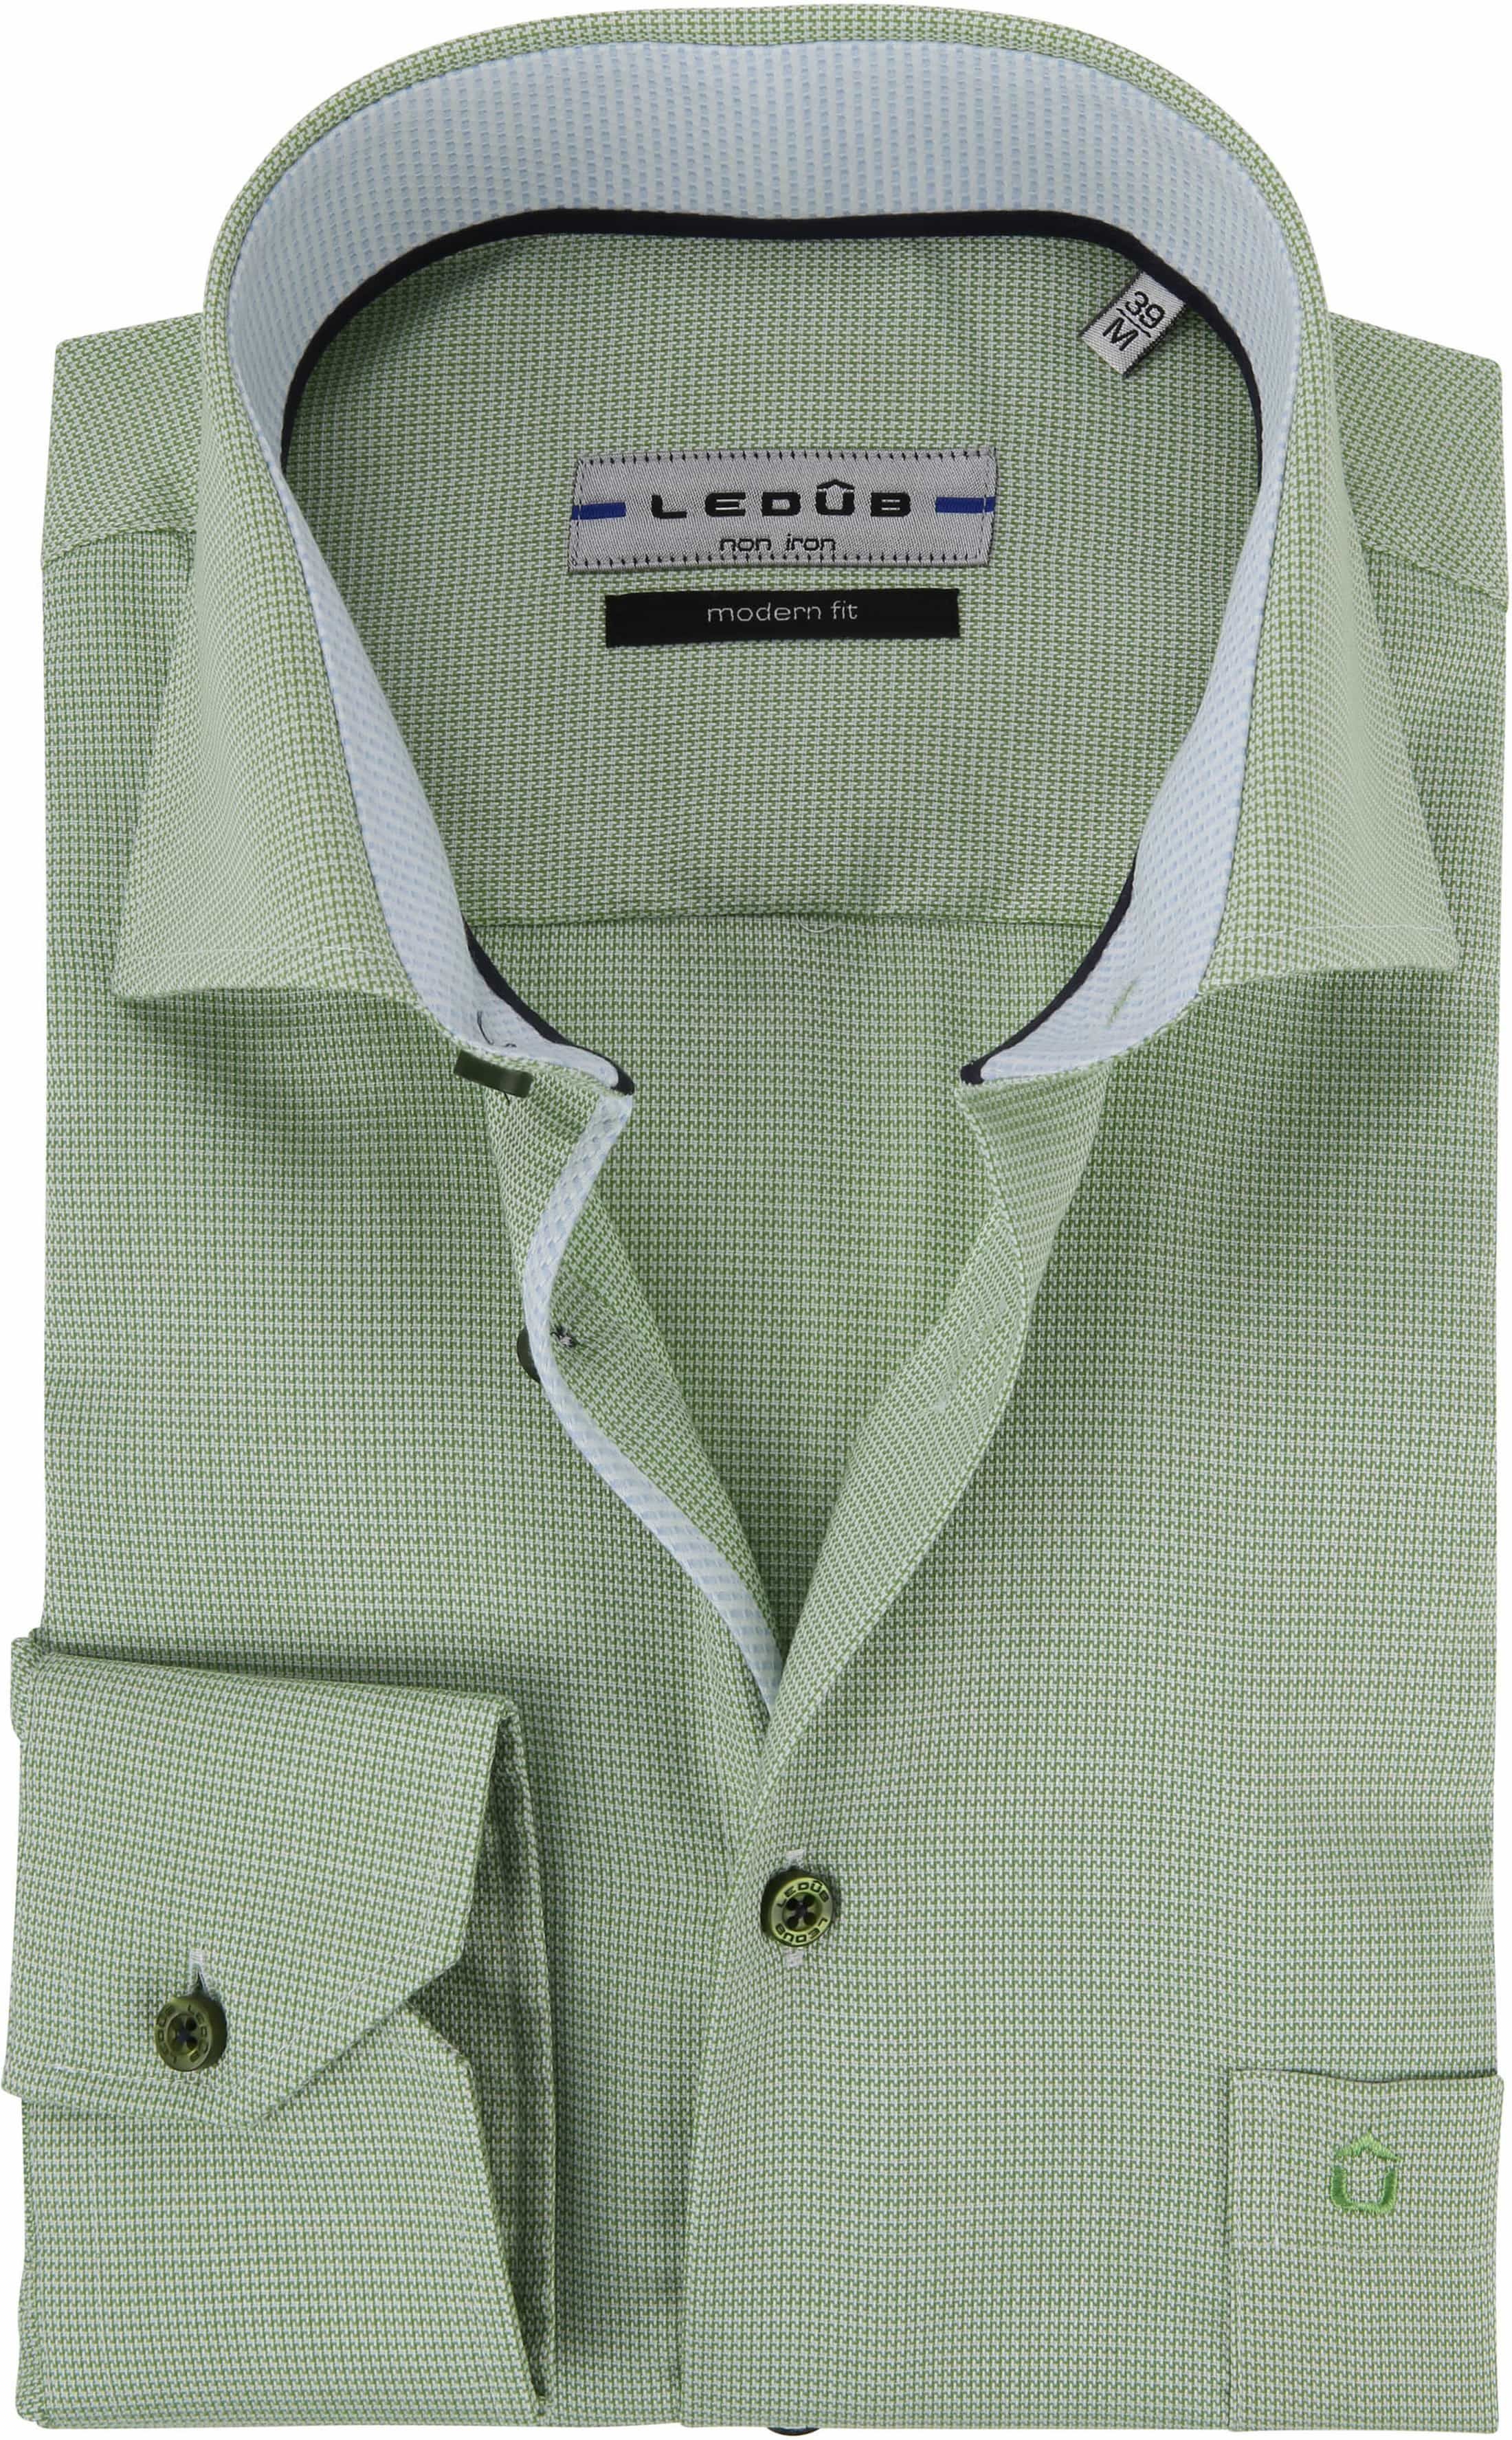 Ledub Shirt Non Iron MF Green size 18